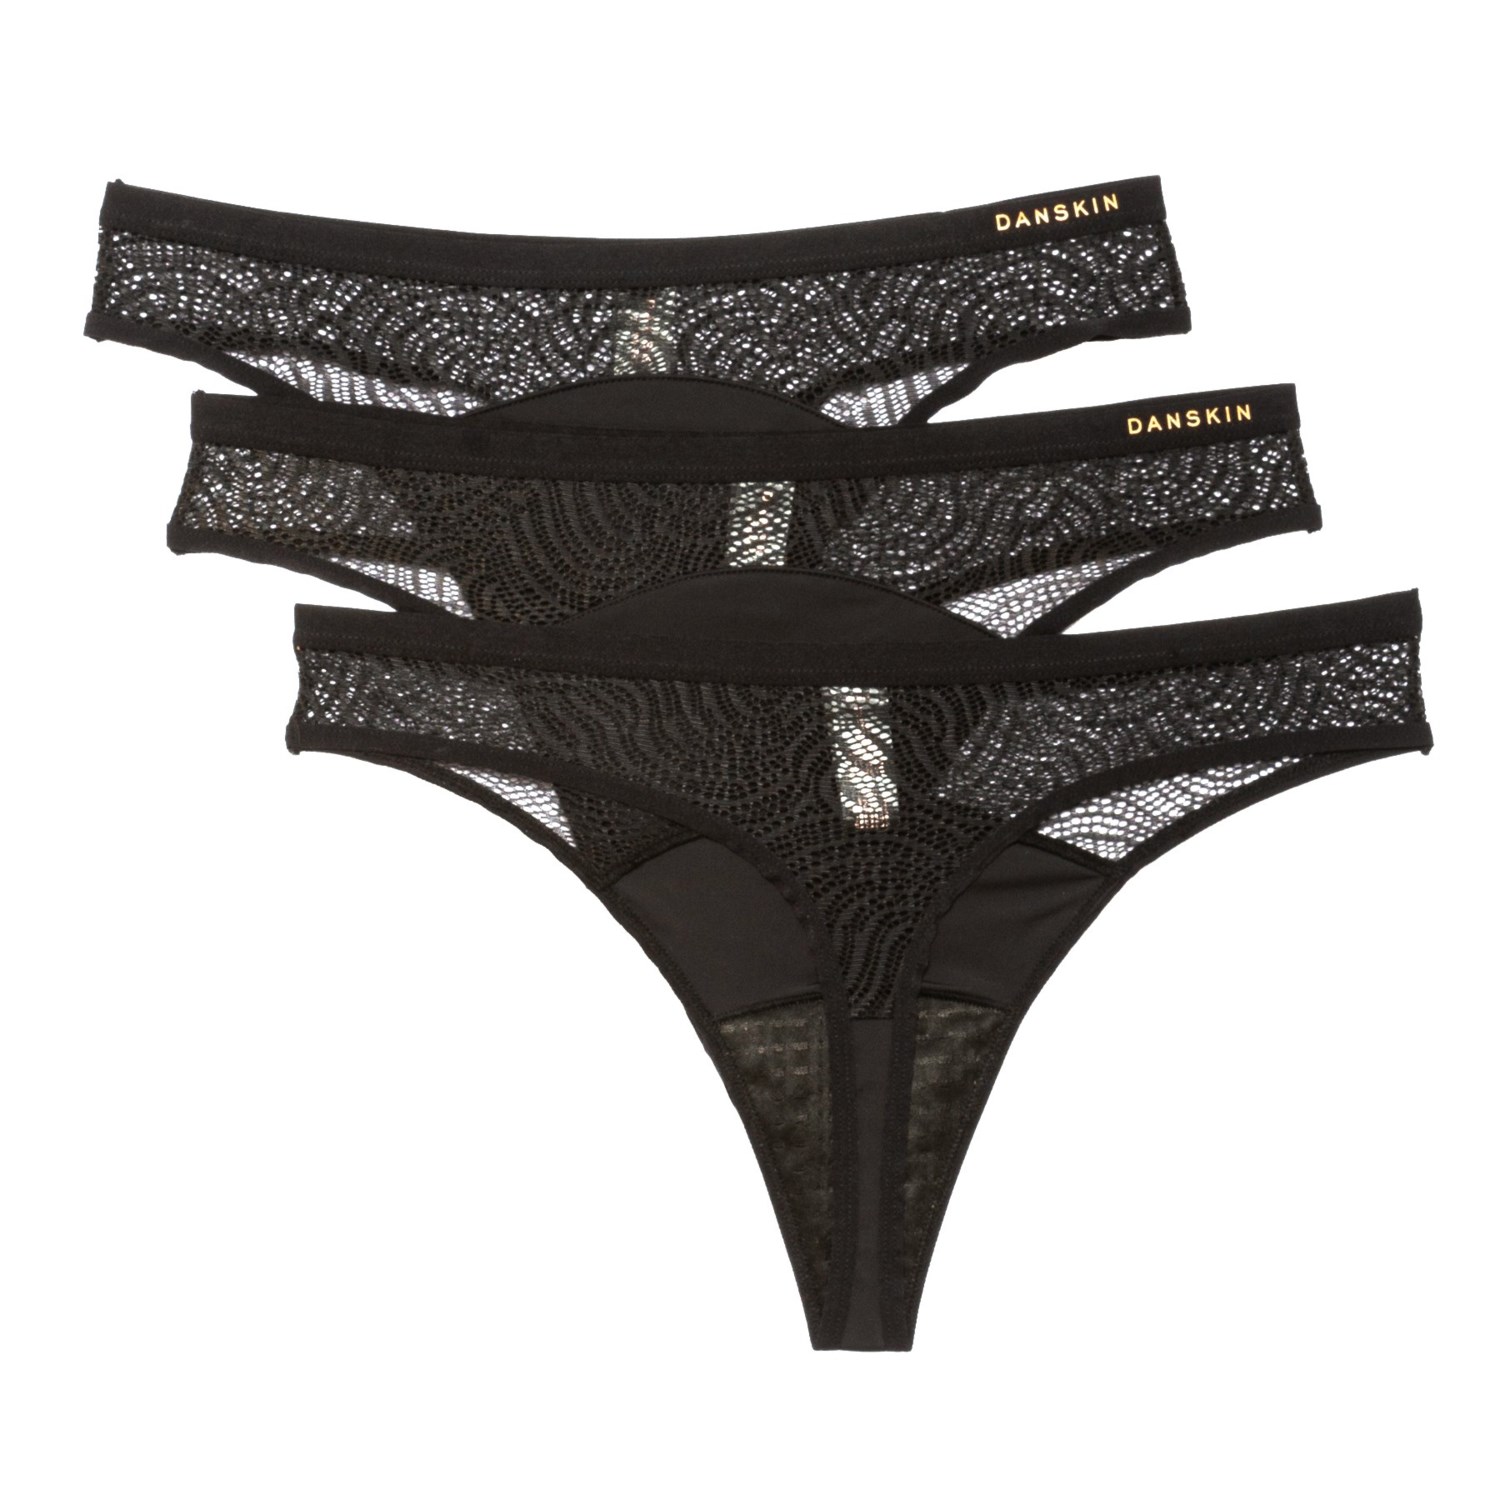 Danskin Microfiber and Lace Period Panties - 3-Pack, Thong - Save 68%